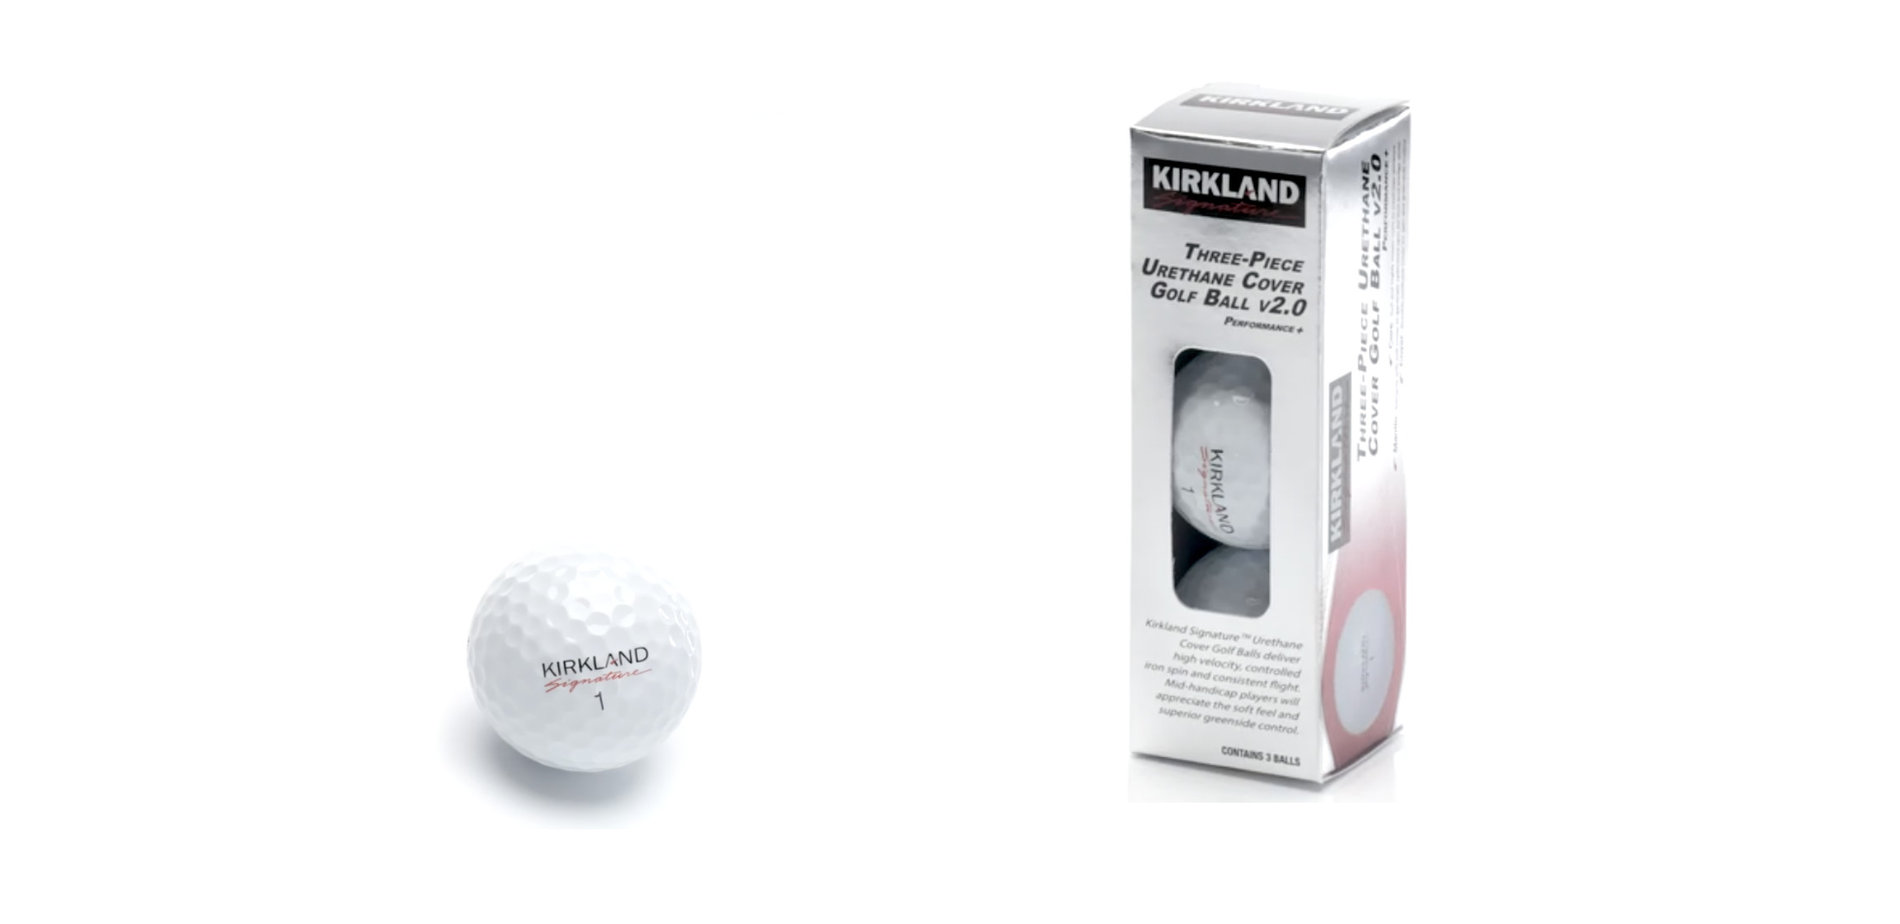 Kirkland golf ball review main